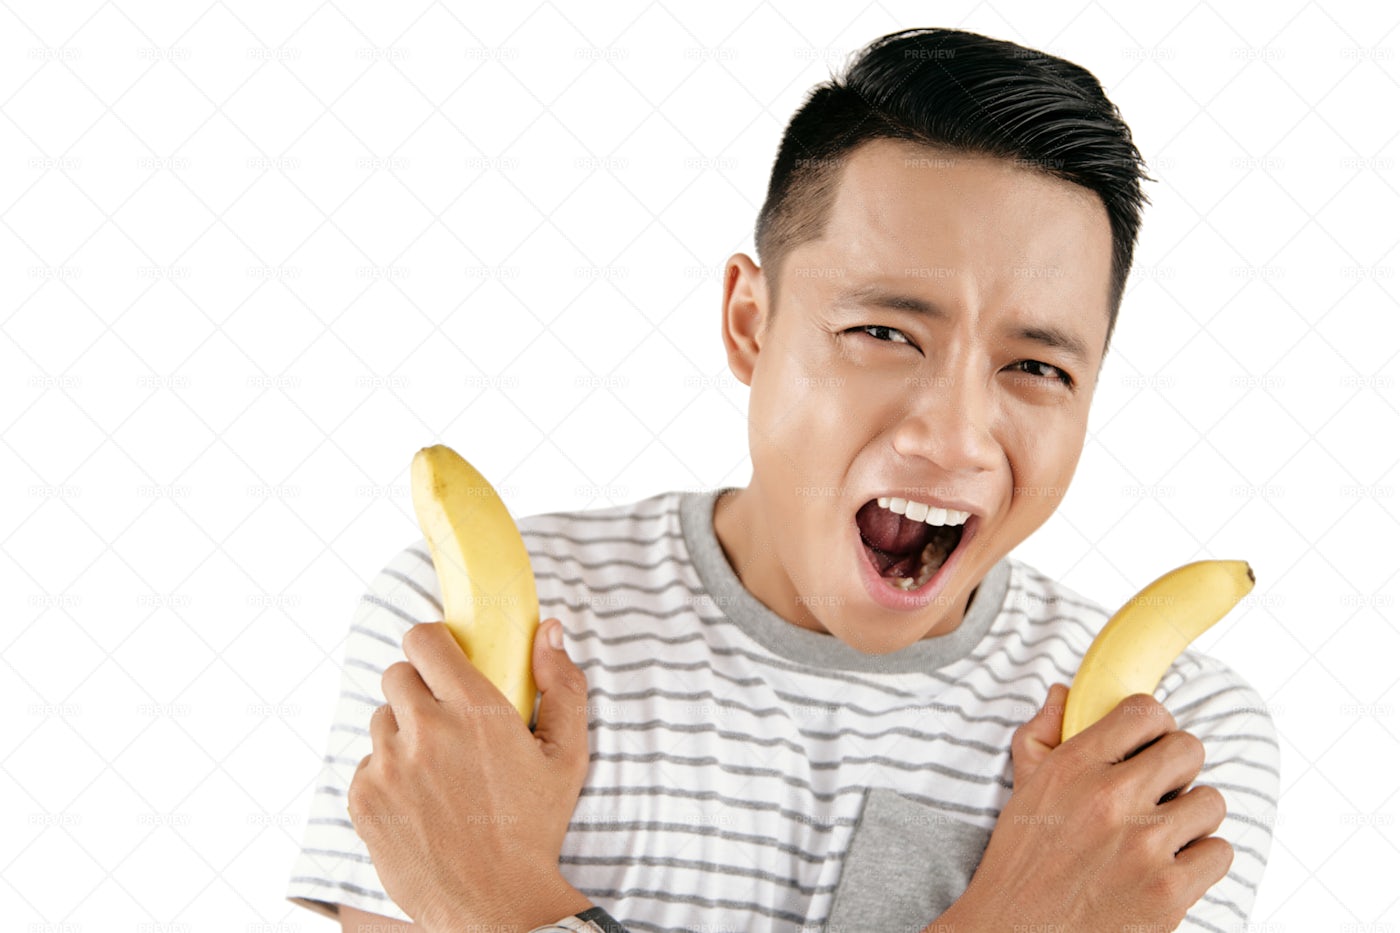 Emotional Man With Bananas: Stock Photos